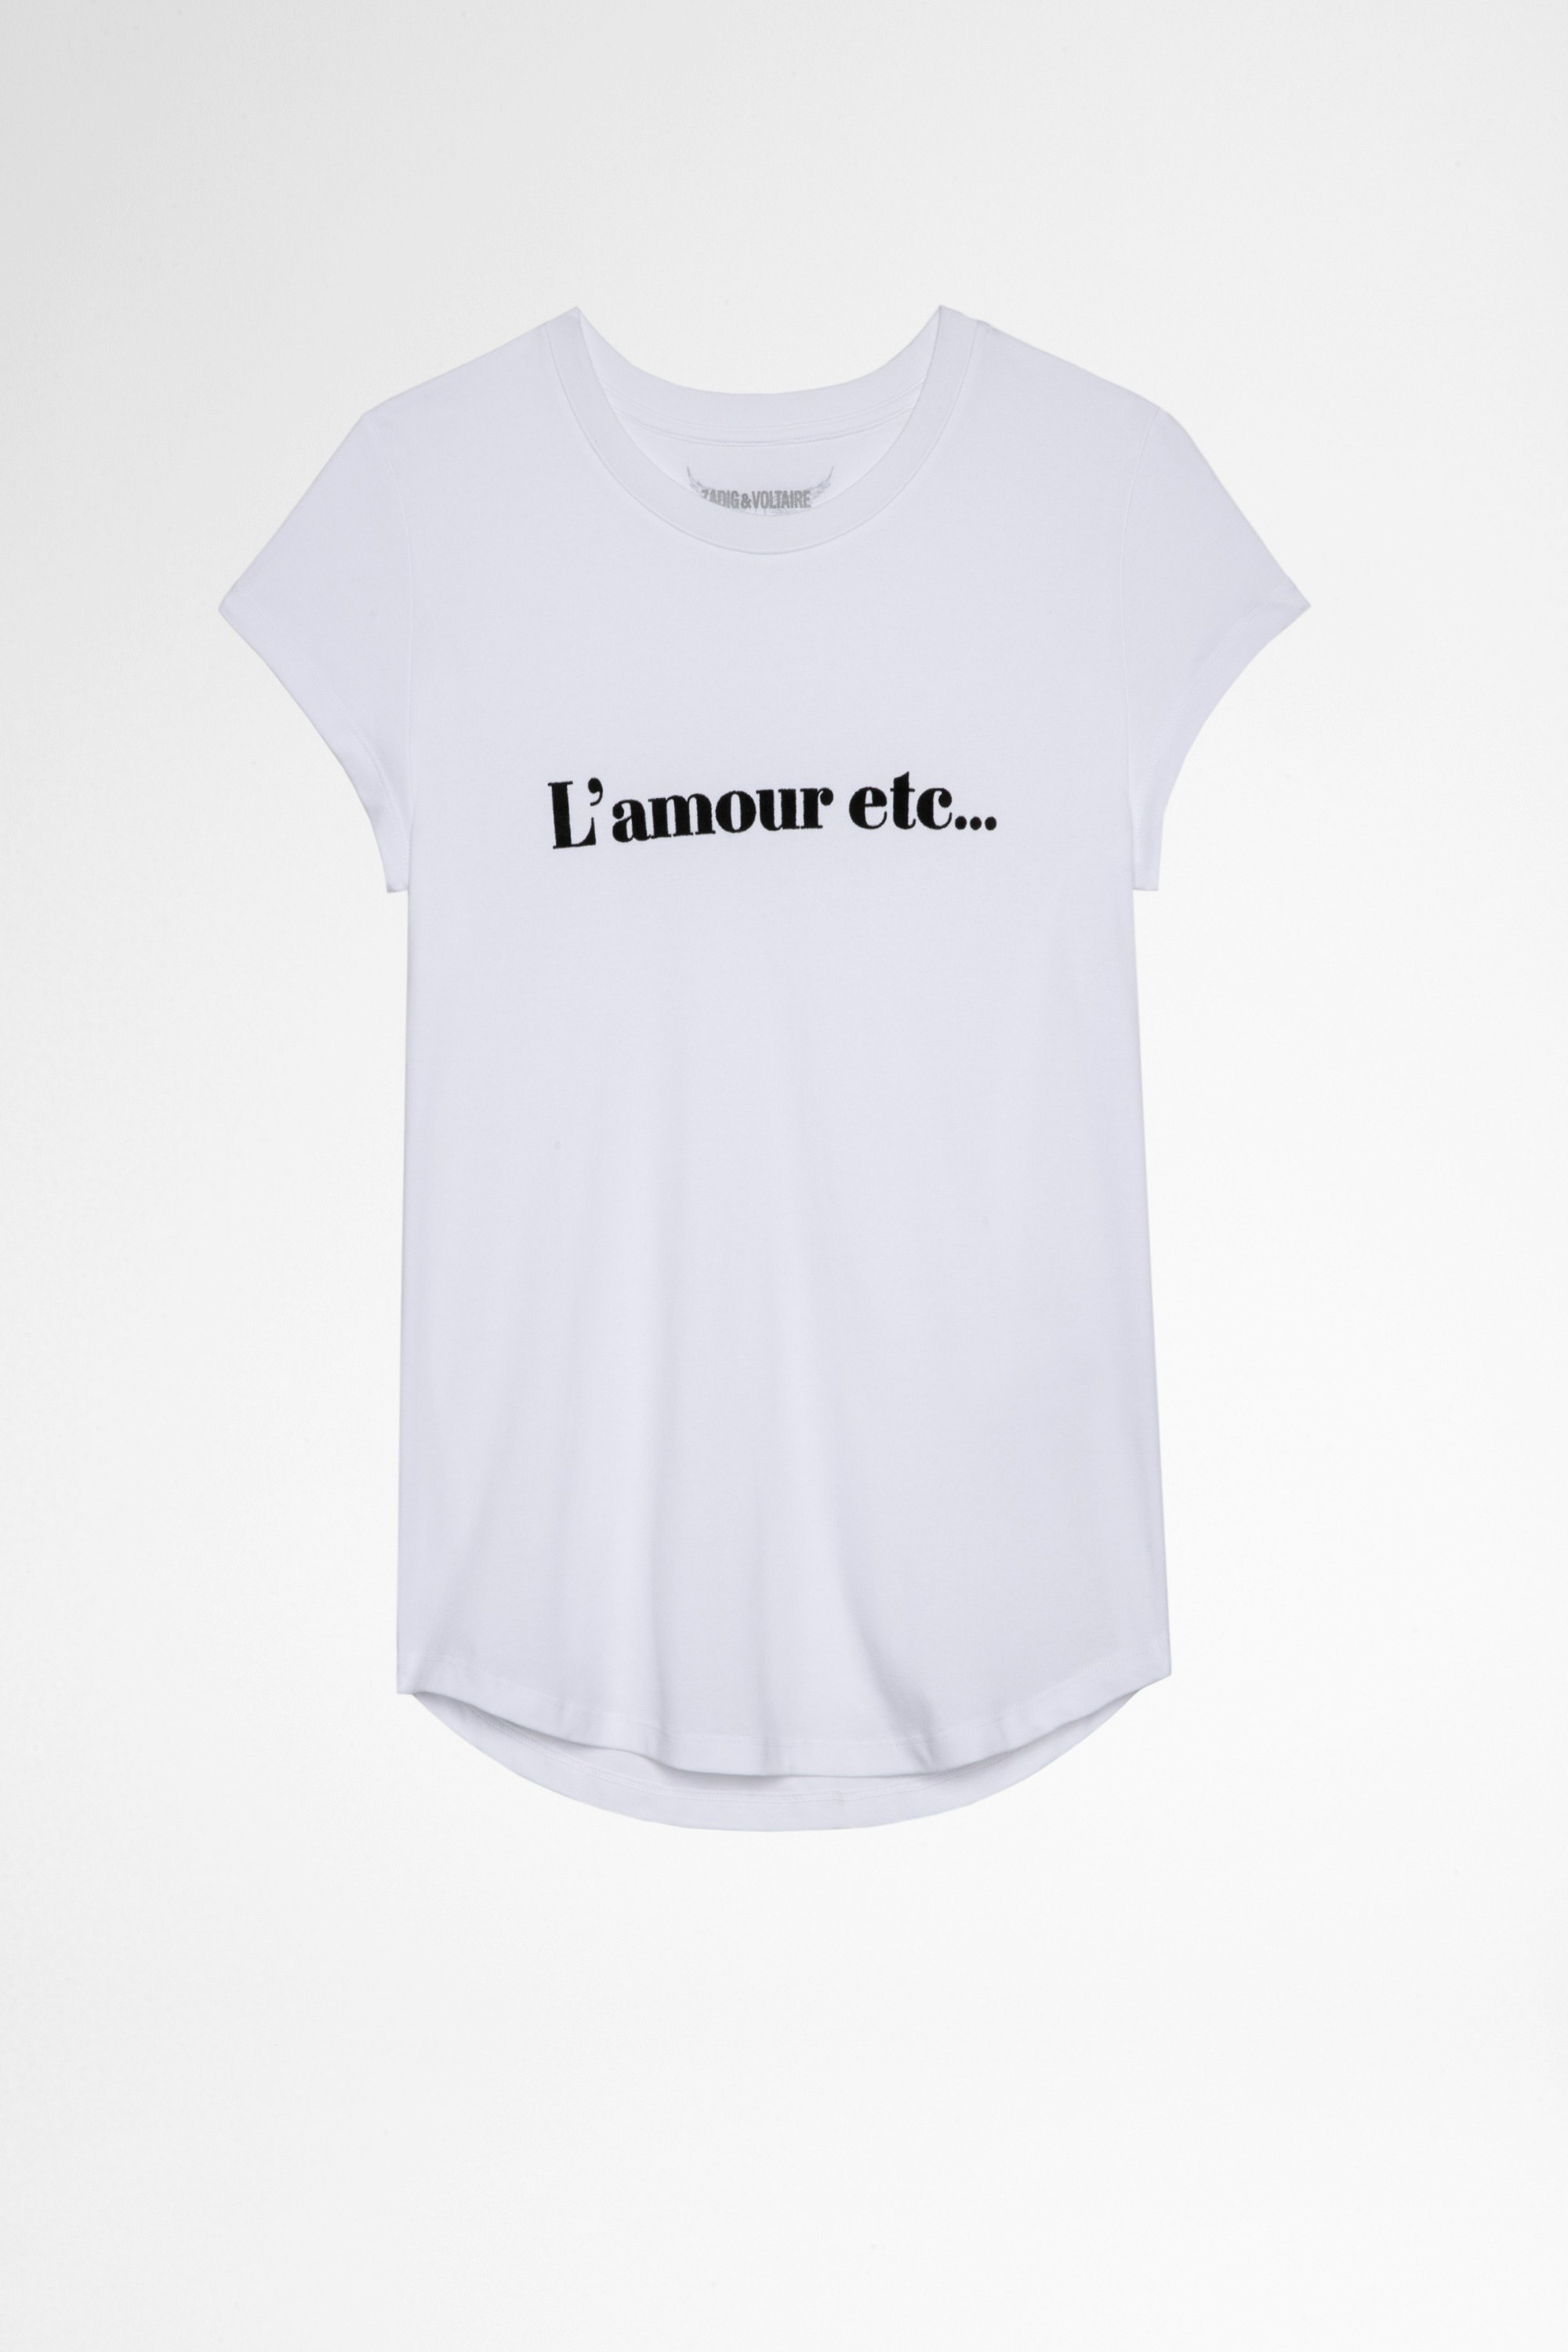 Woop L'amour etc T-shirt White cotton L'amour etc... T-shirt Women's